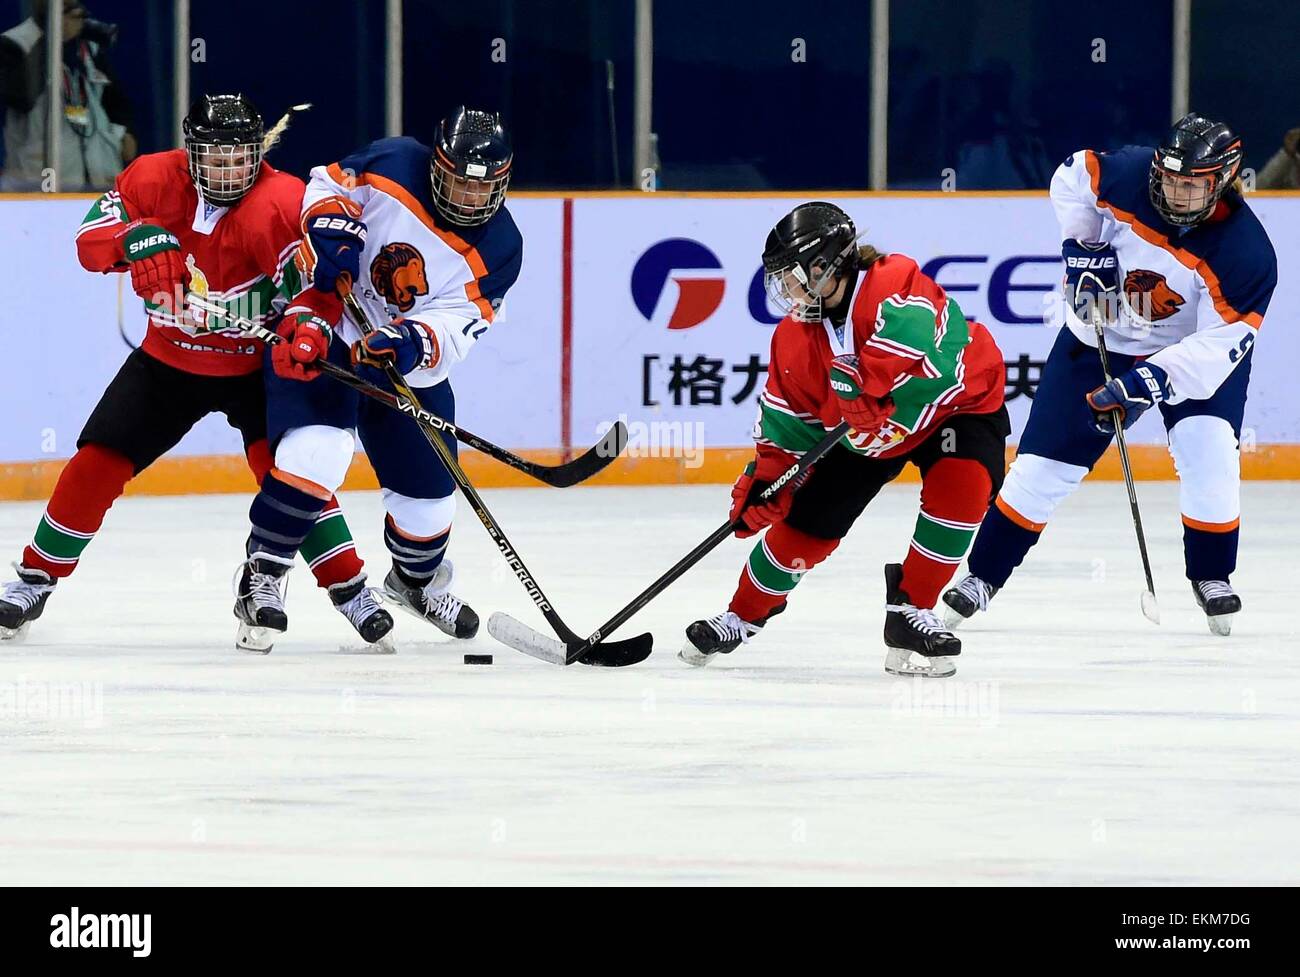 Beijing, China. 12 abr, 2015. Mieneke de Jong (2nd, L) de los Países Bajos impulsa el puck durante el partido entre los Países Bajos y Hungría en el 2015 IIHF Ice Hockey Campeonato Mundial Femenino, división 1 grupo B en el gimnasio de Capital en Beijing, capital de China, el 12 de abril de 2015. Holanda ganó 2-0. Crédito: Gong Lei/Xinhua/Alamy Live News Foto de stock